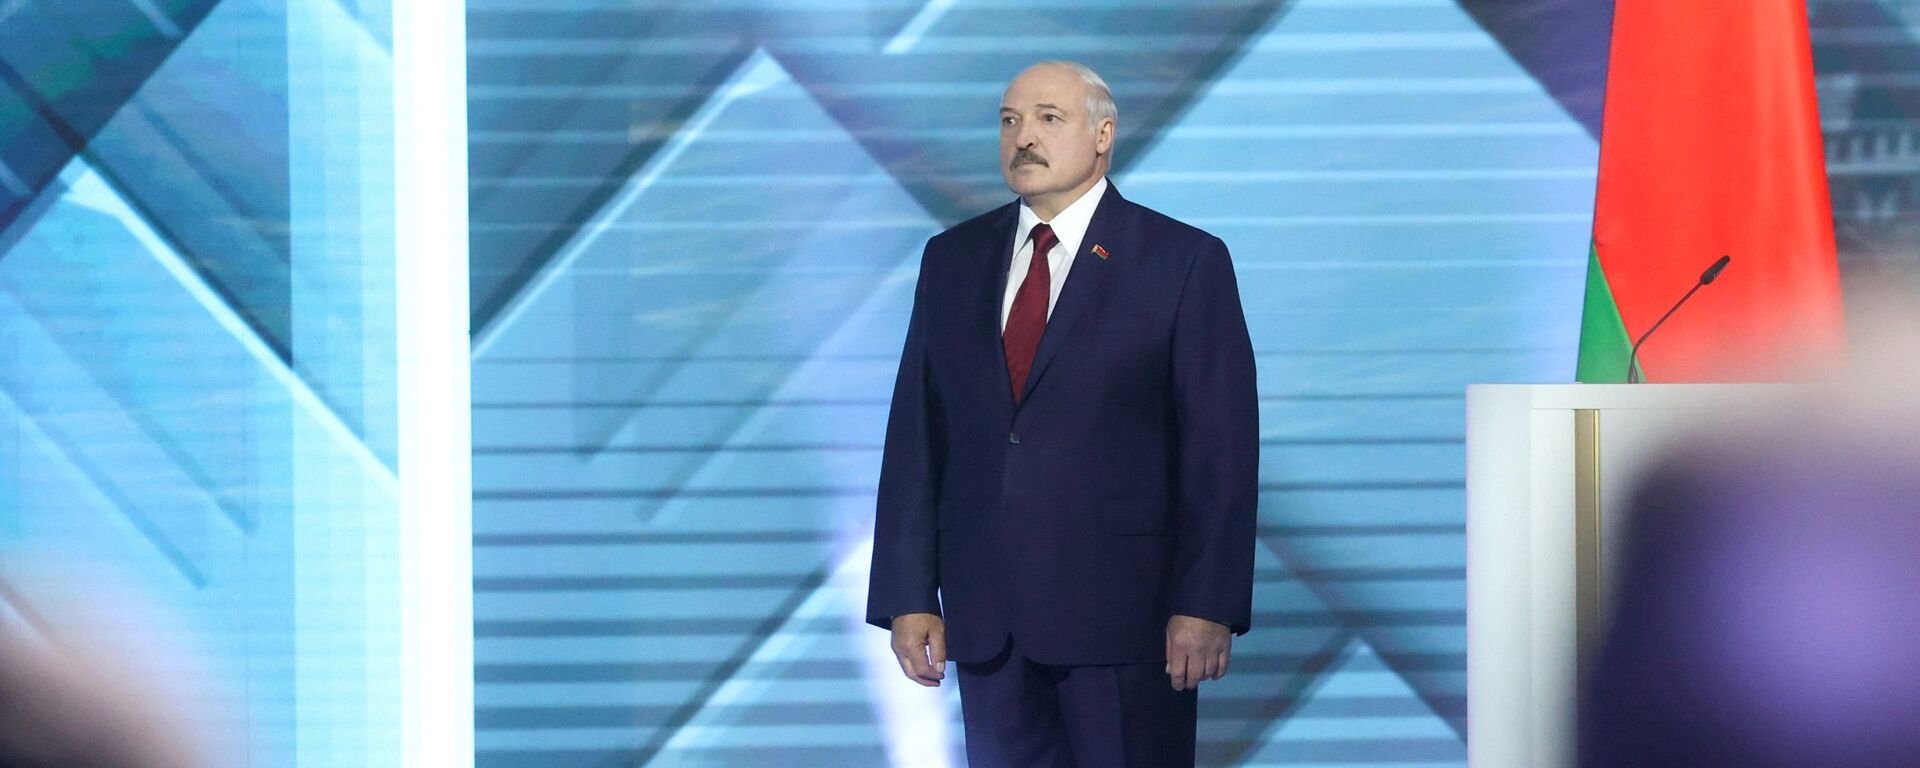 Lukašenko o predsedničkoj dužnosti: To je moj način života, ništa drugo ne mogu da zamislim - Sputnik Srbija, 1920, 06.08.2020